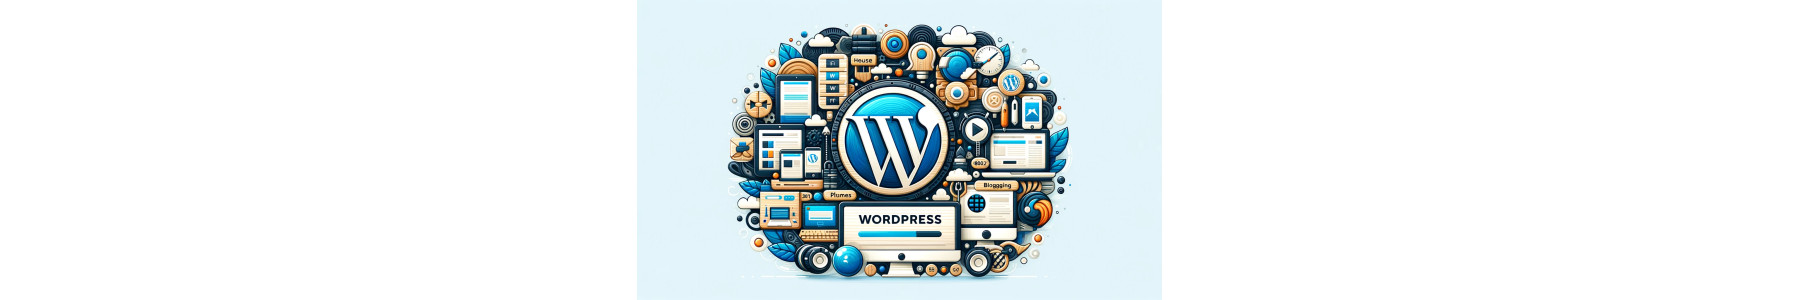 Soluzioni WordPress Ottimizzate e Sicure | Webbin24.com